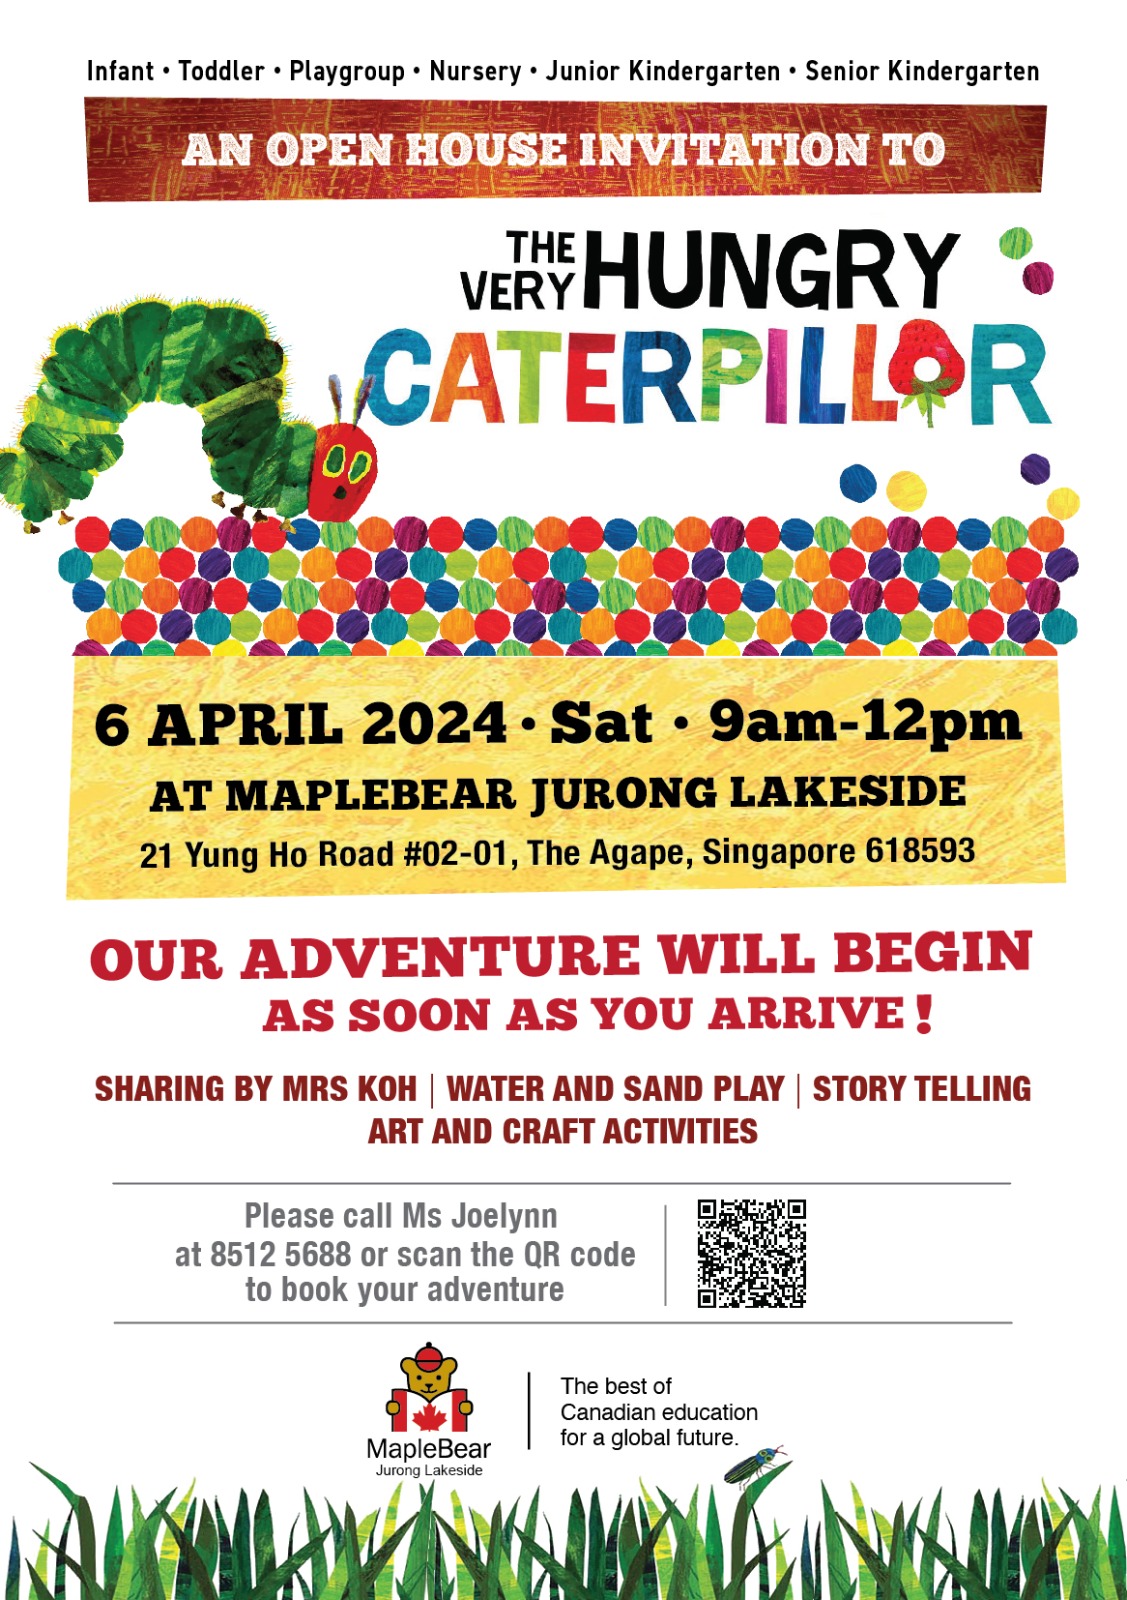 MapleBear Jurong Lakeside Open House Flyer